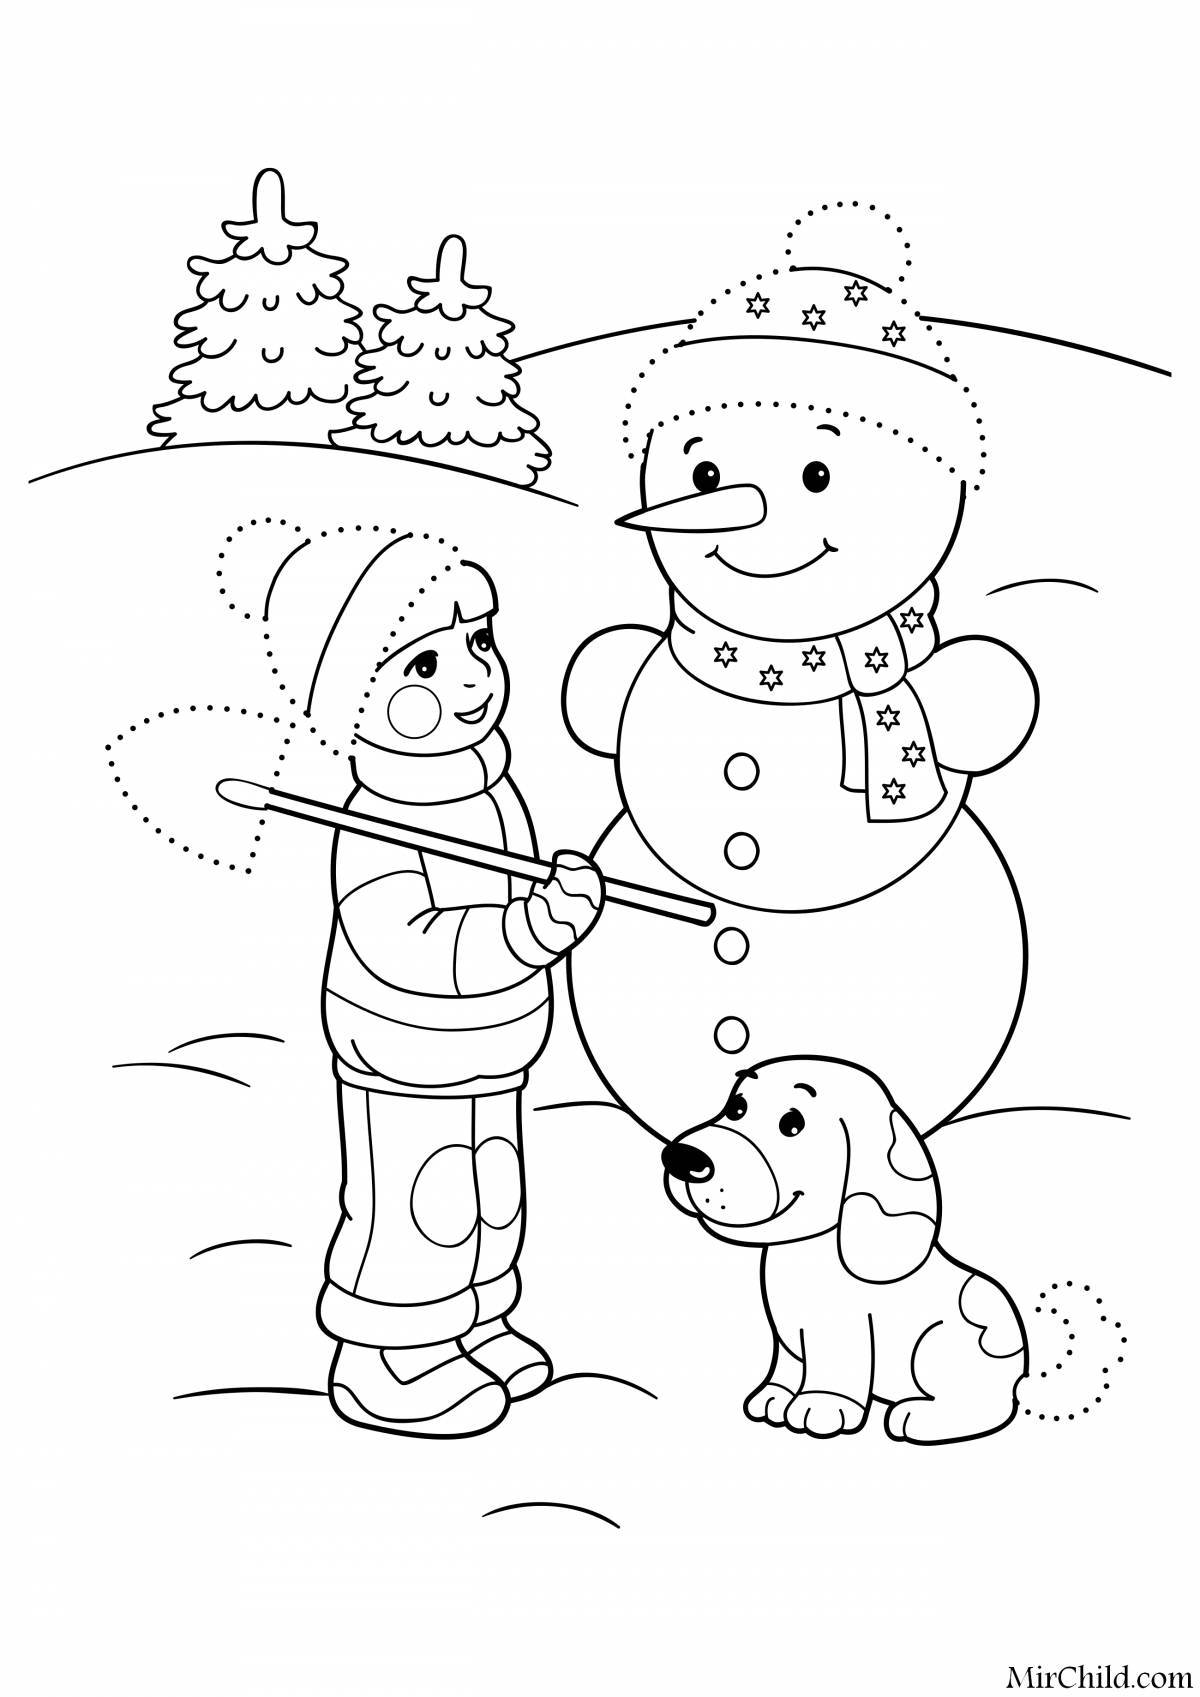 Лучистая раскраска зима для детей 6-7 лет